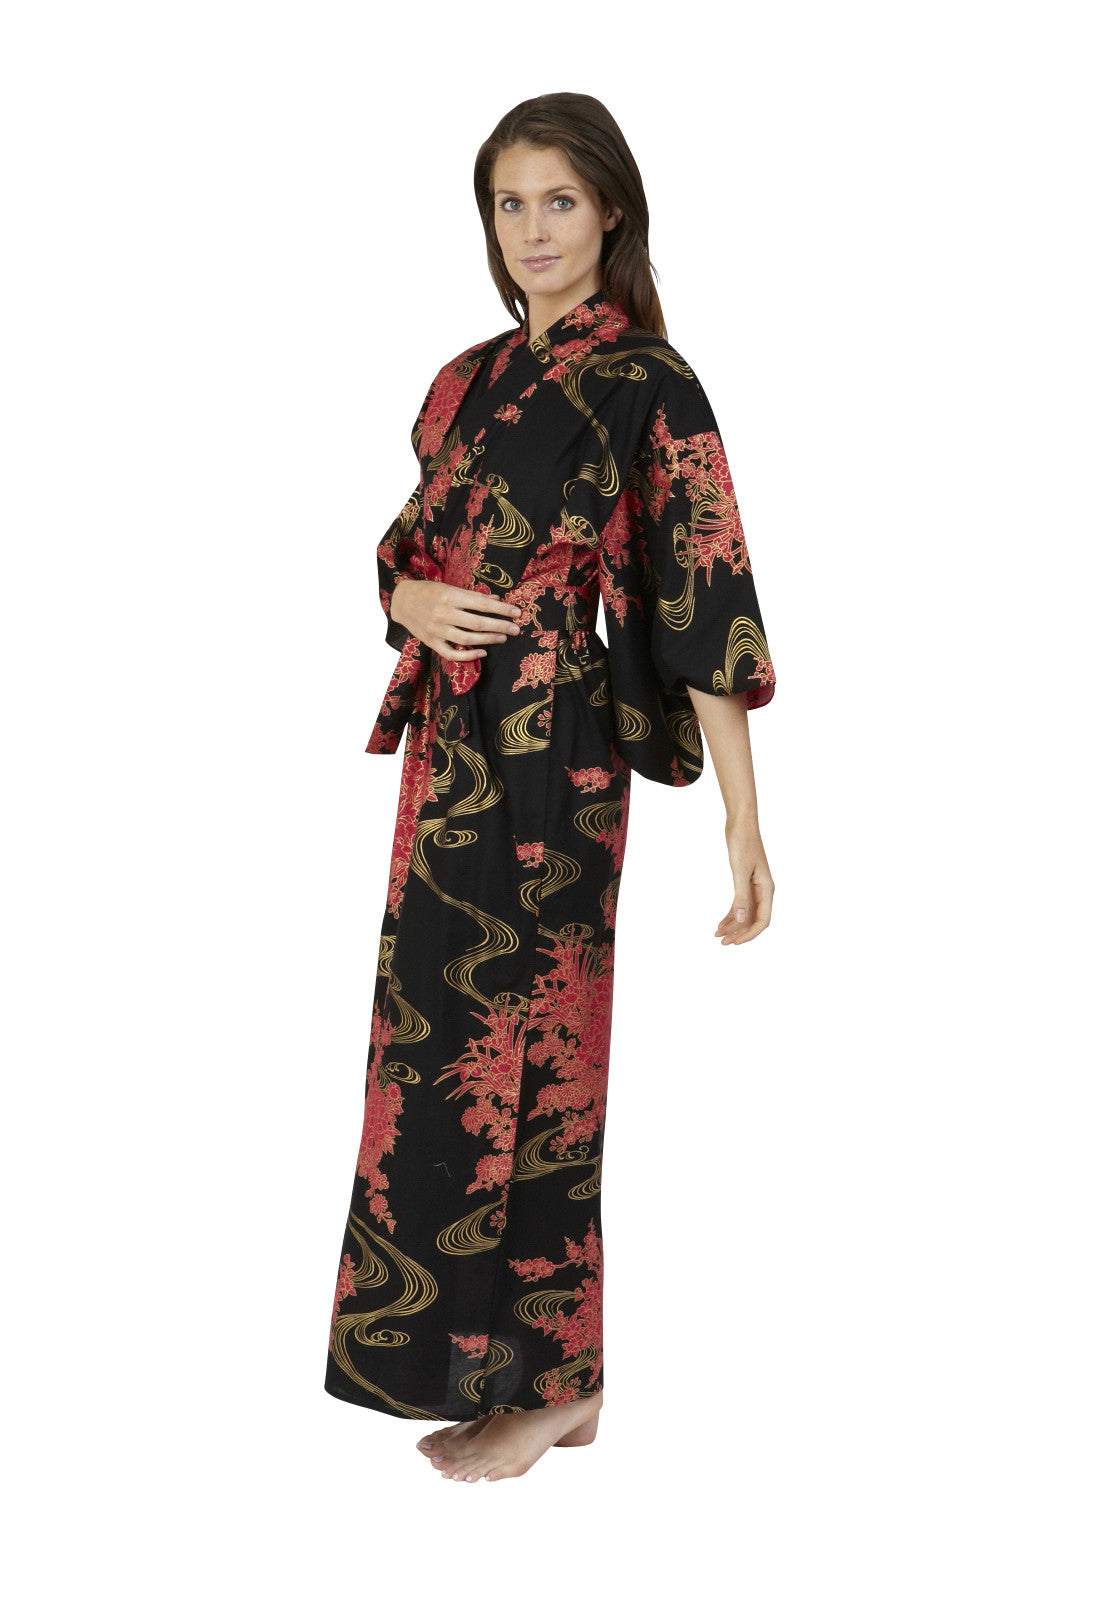 Flowing Womens Plus Size Cotton Kimono Robe